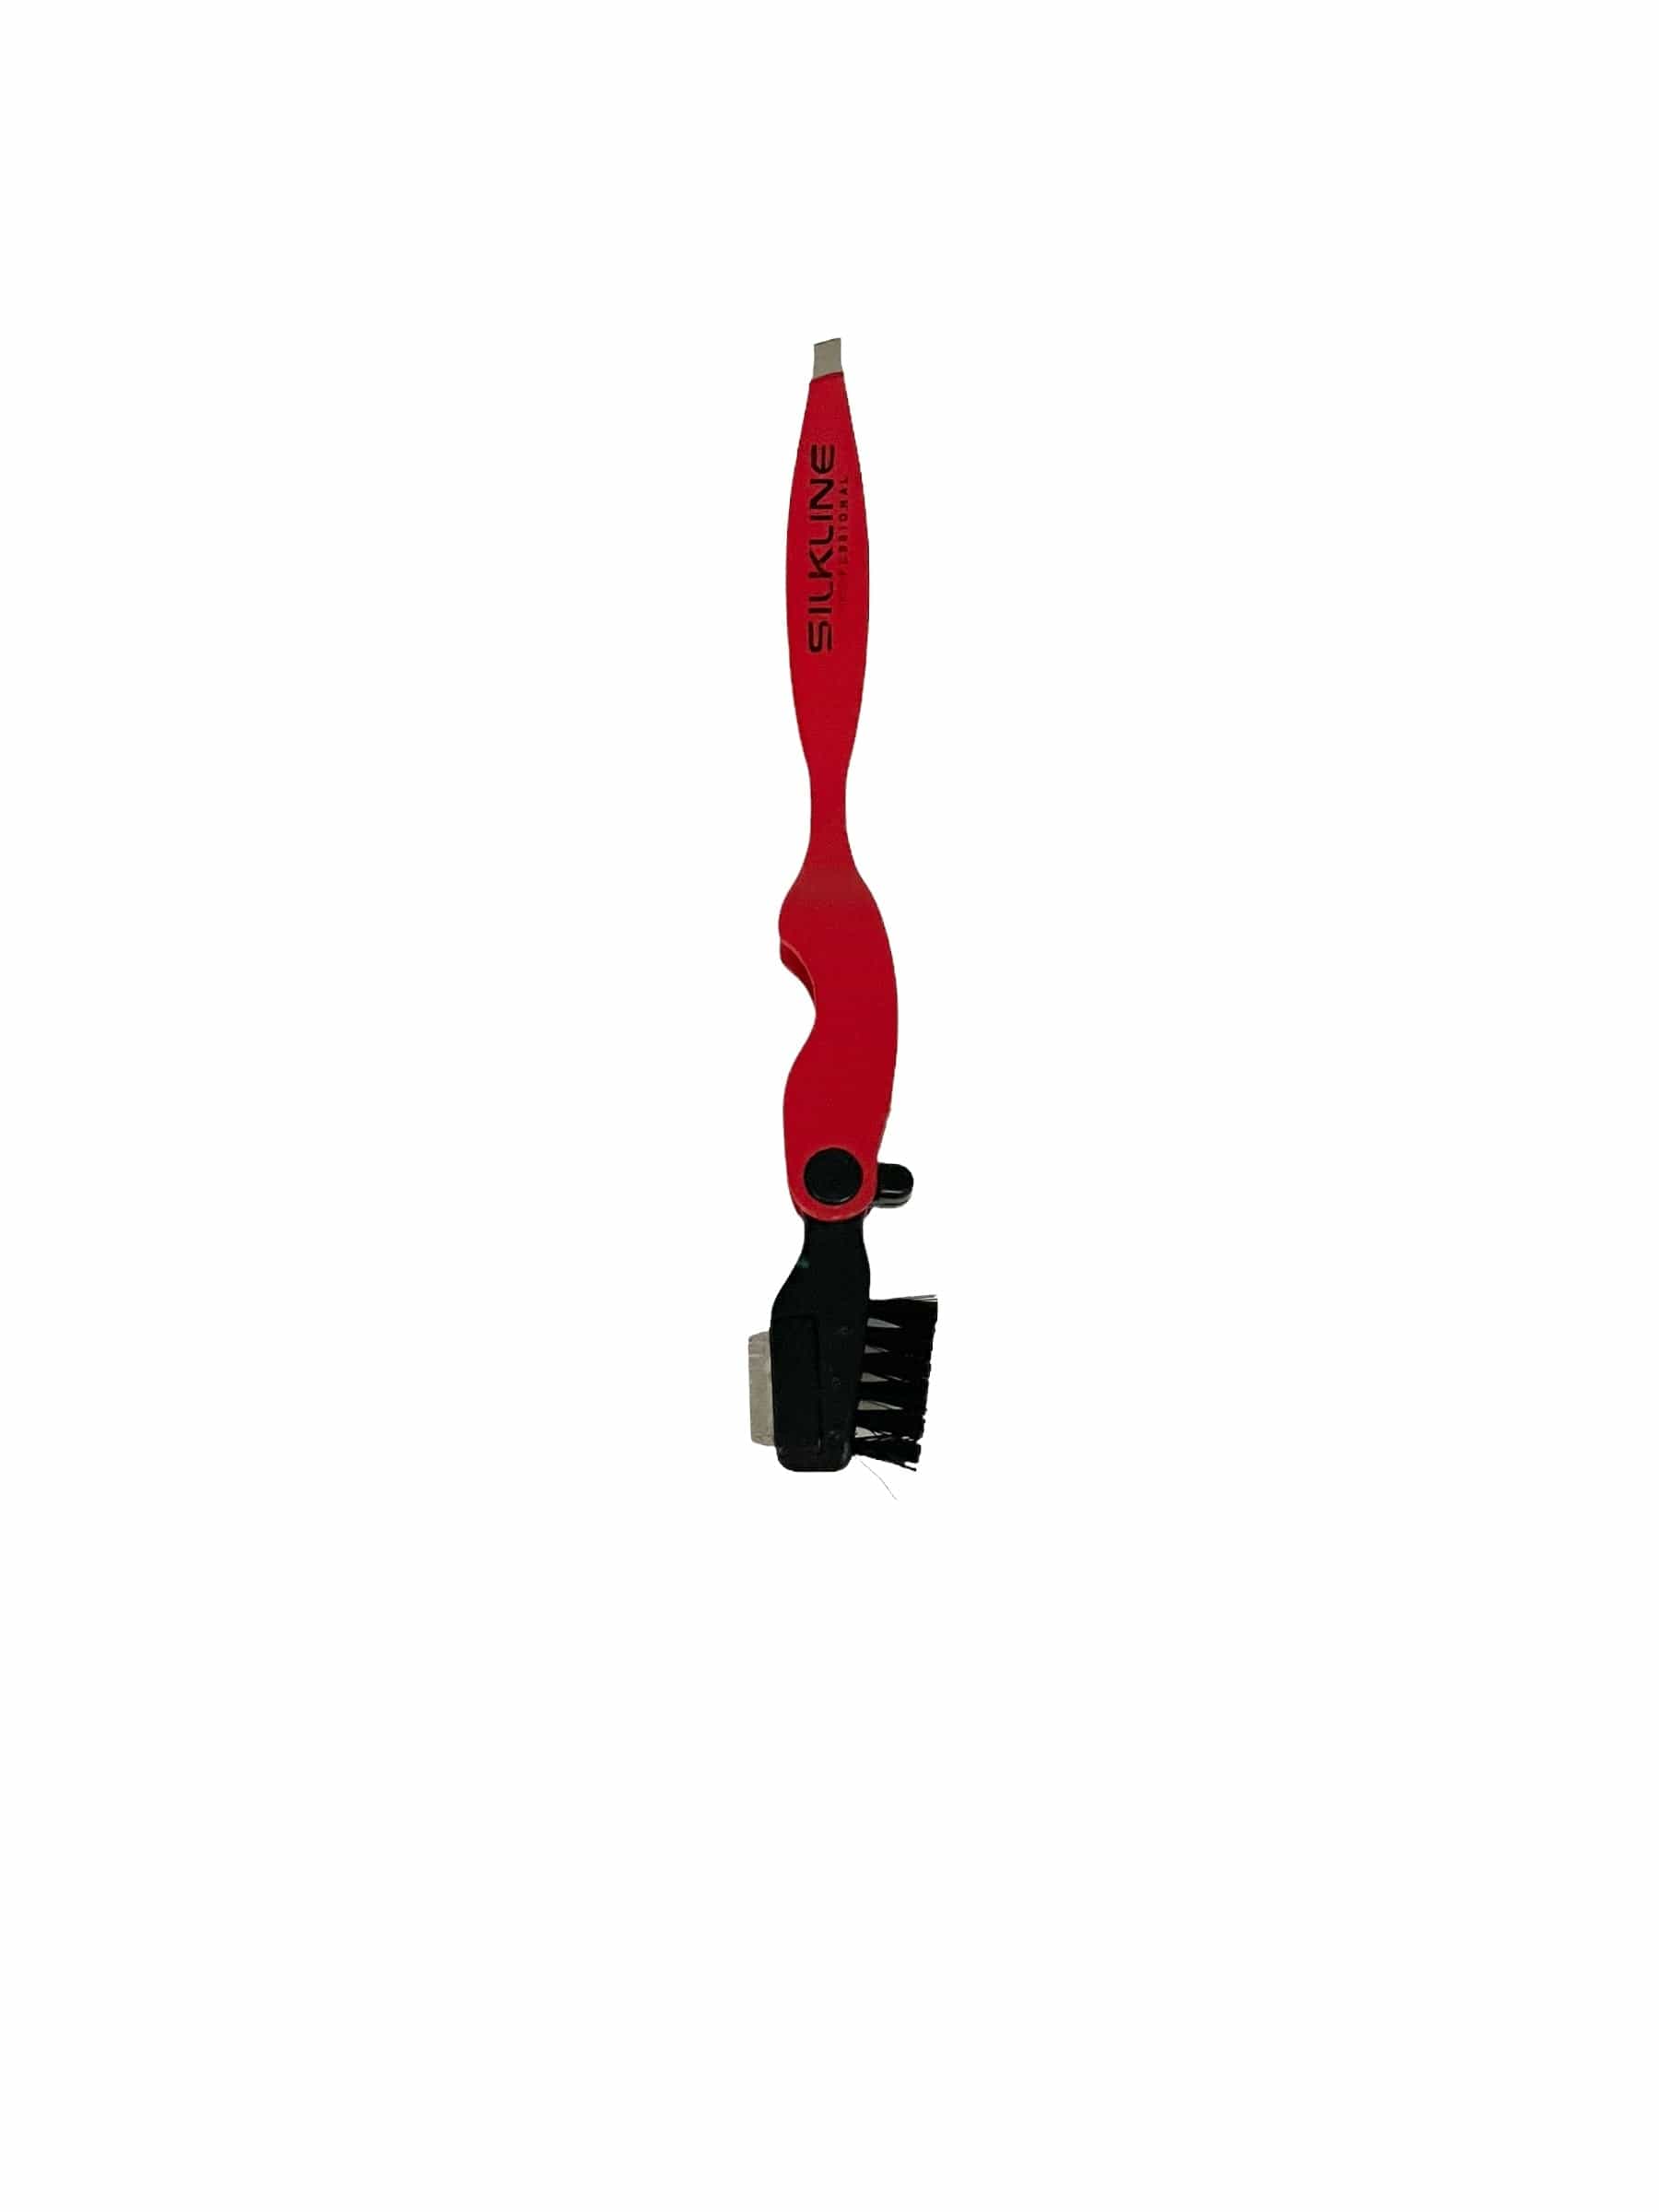 Tweezers With Blade And Brush Assorted Colors Tweezers